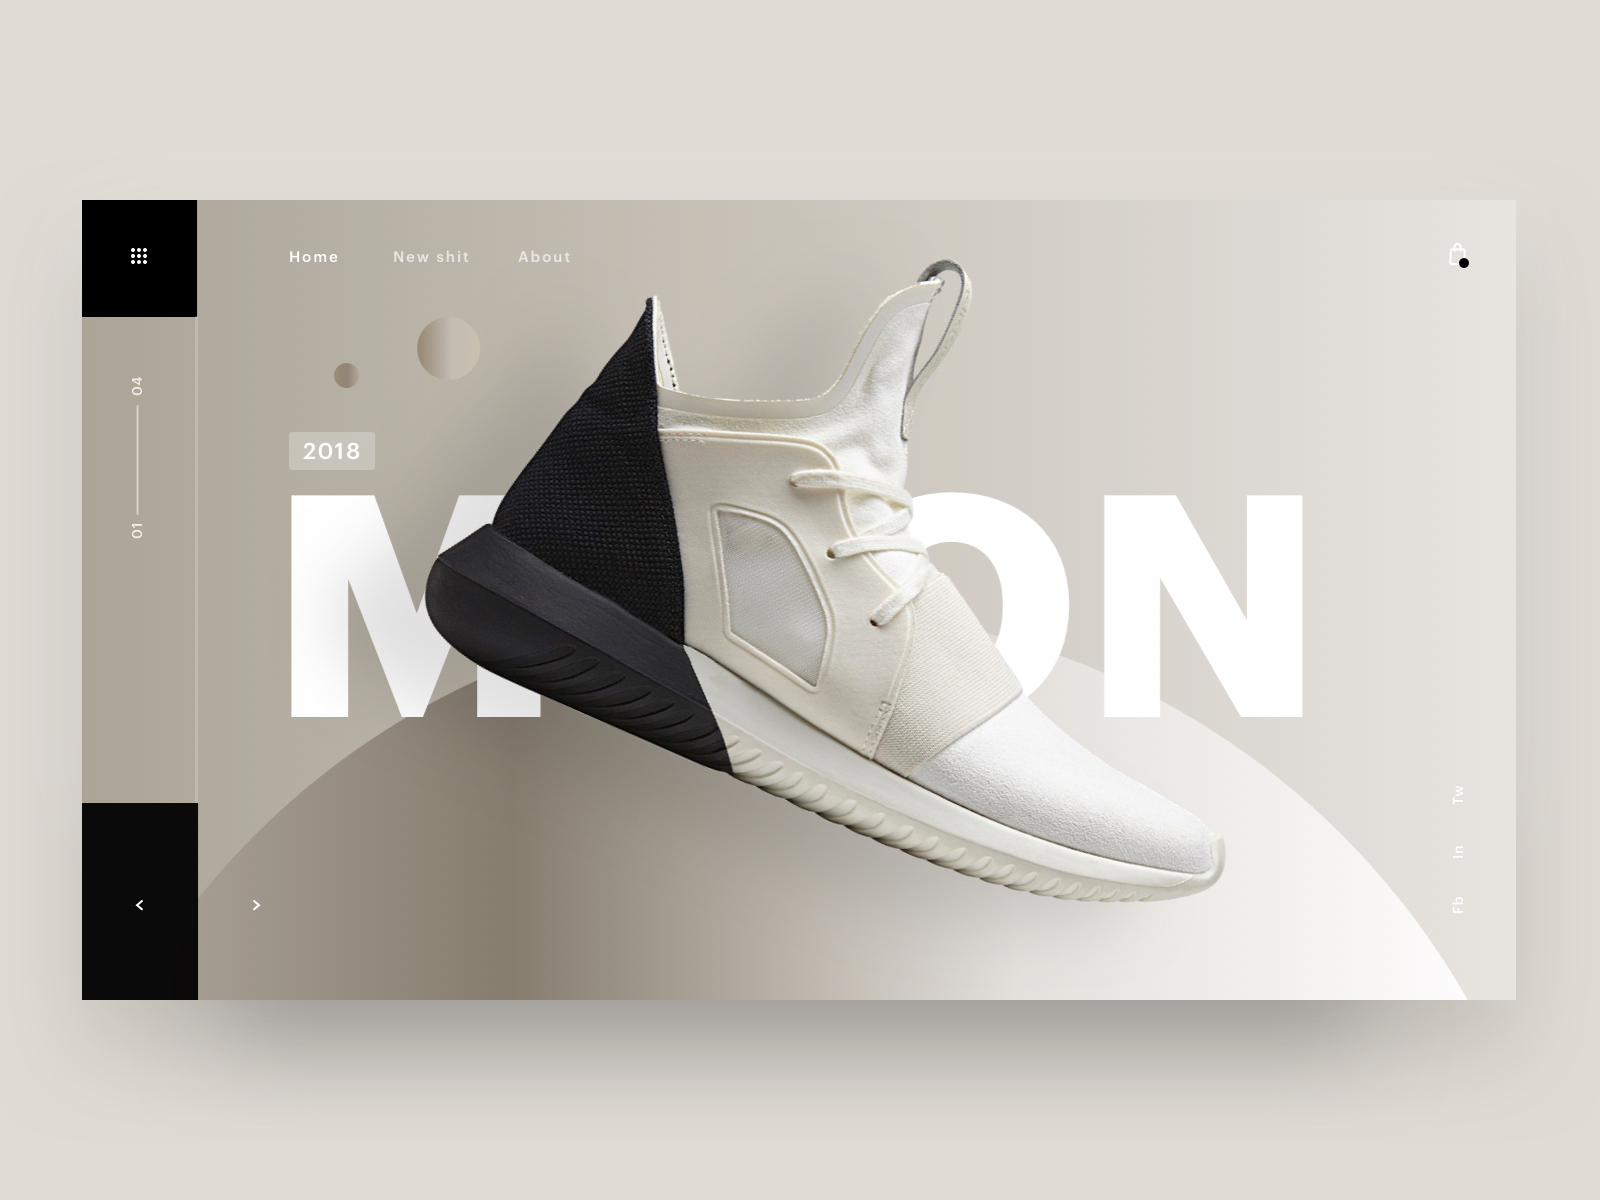 3d shoe design samples